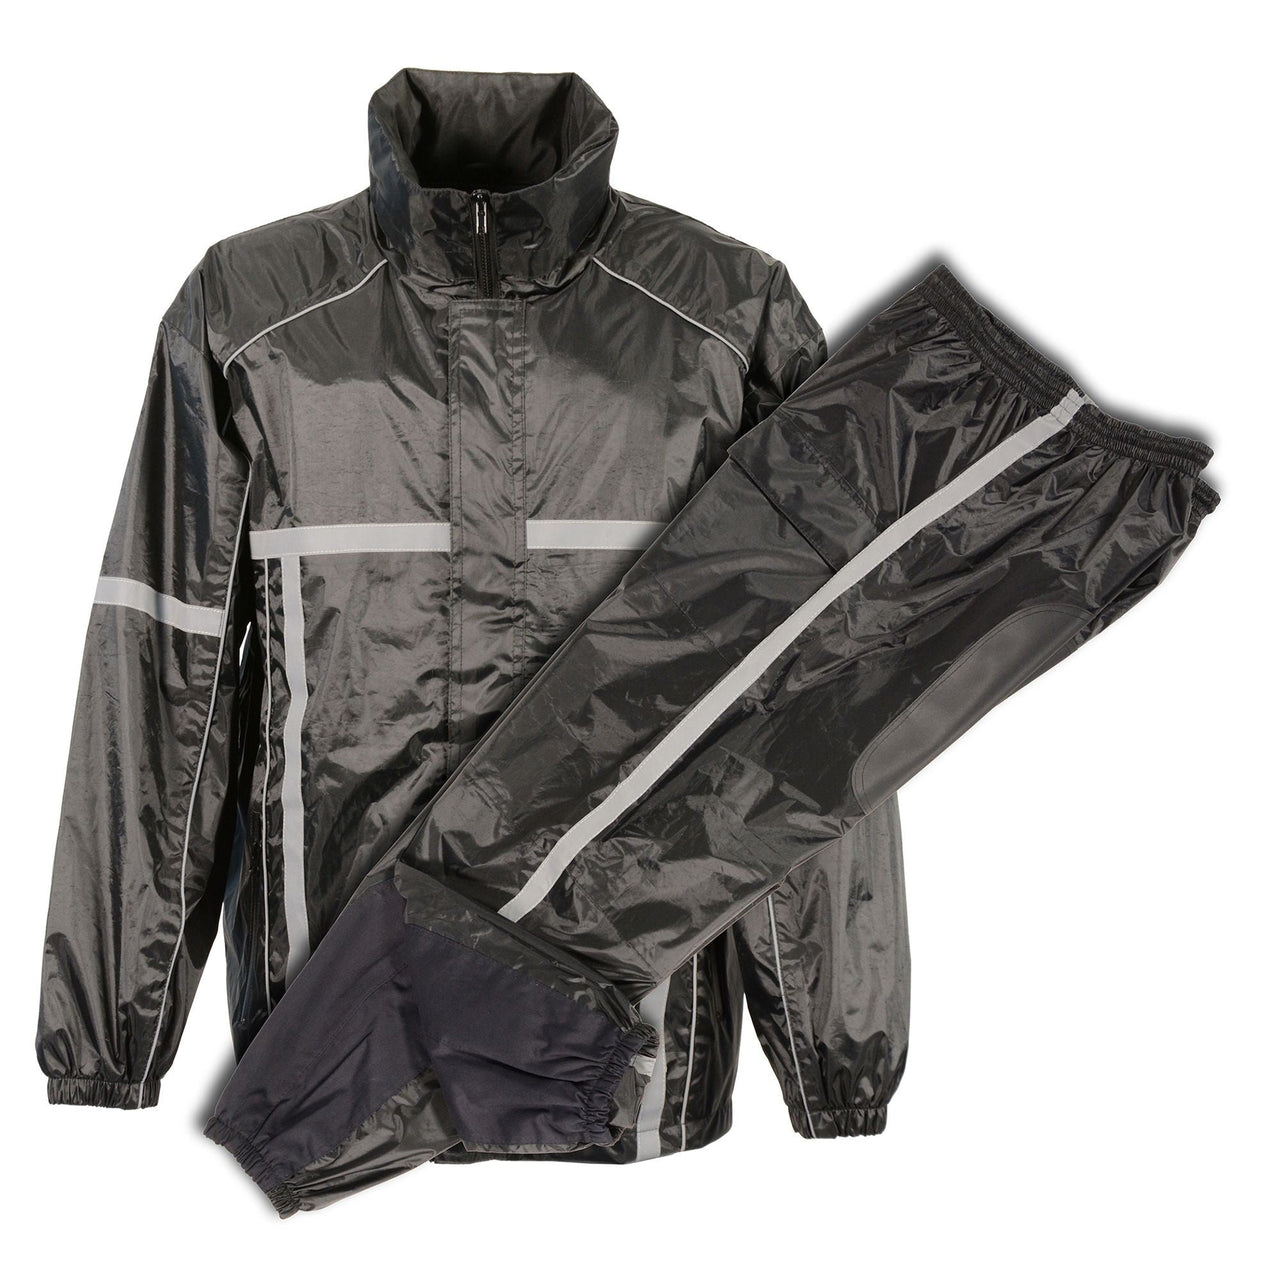 Men's Waterproof Rain Suit w/ Hi Vis Reflective Tape - HighwayLeather